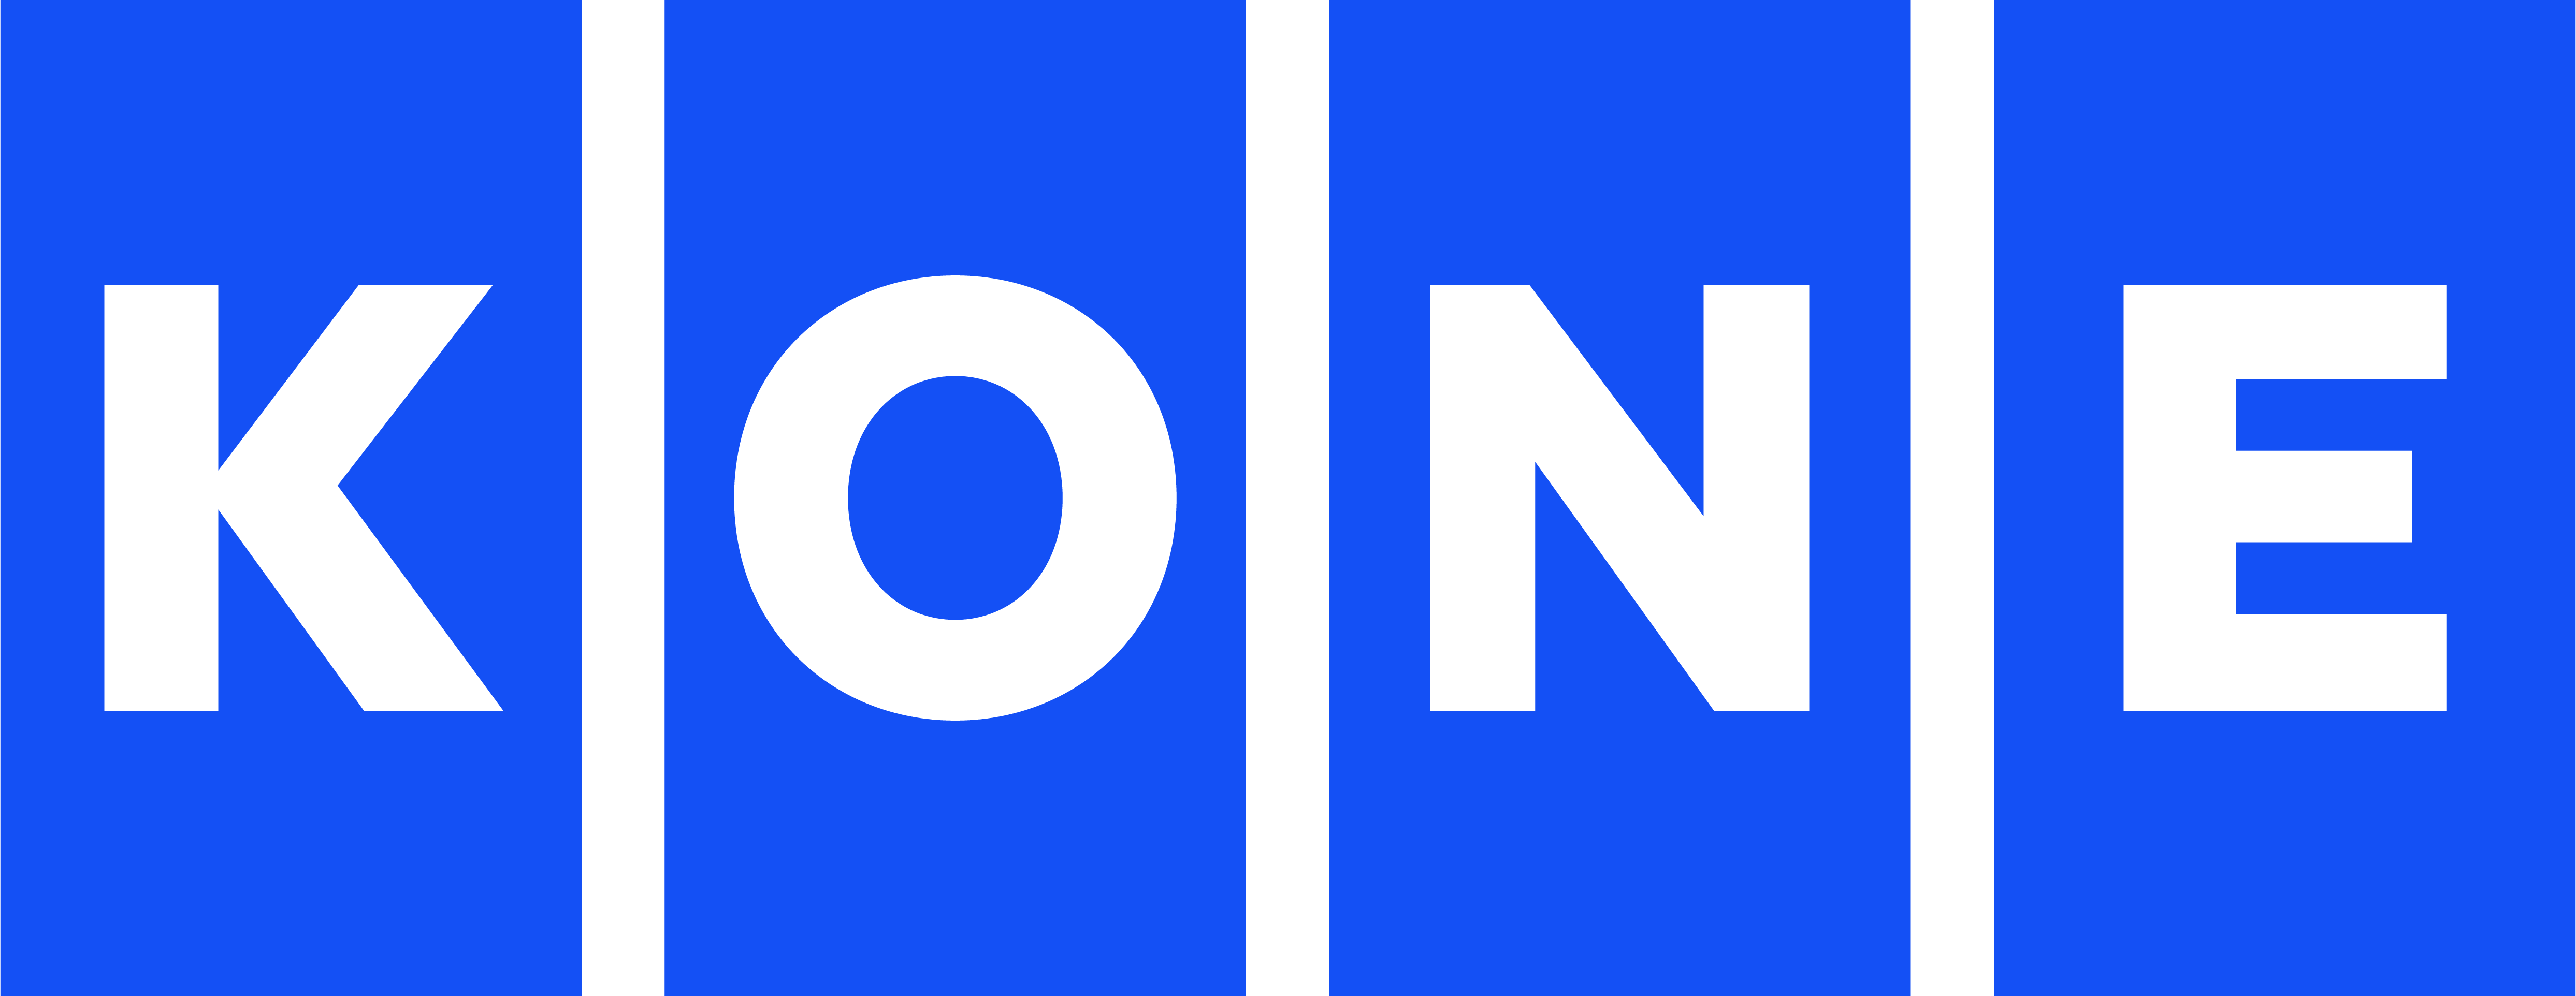 OKB KONE plc logo